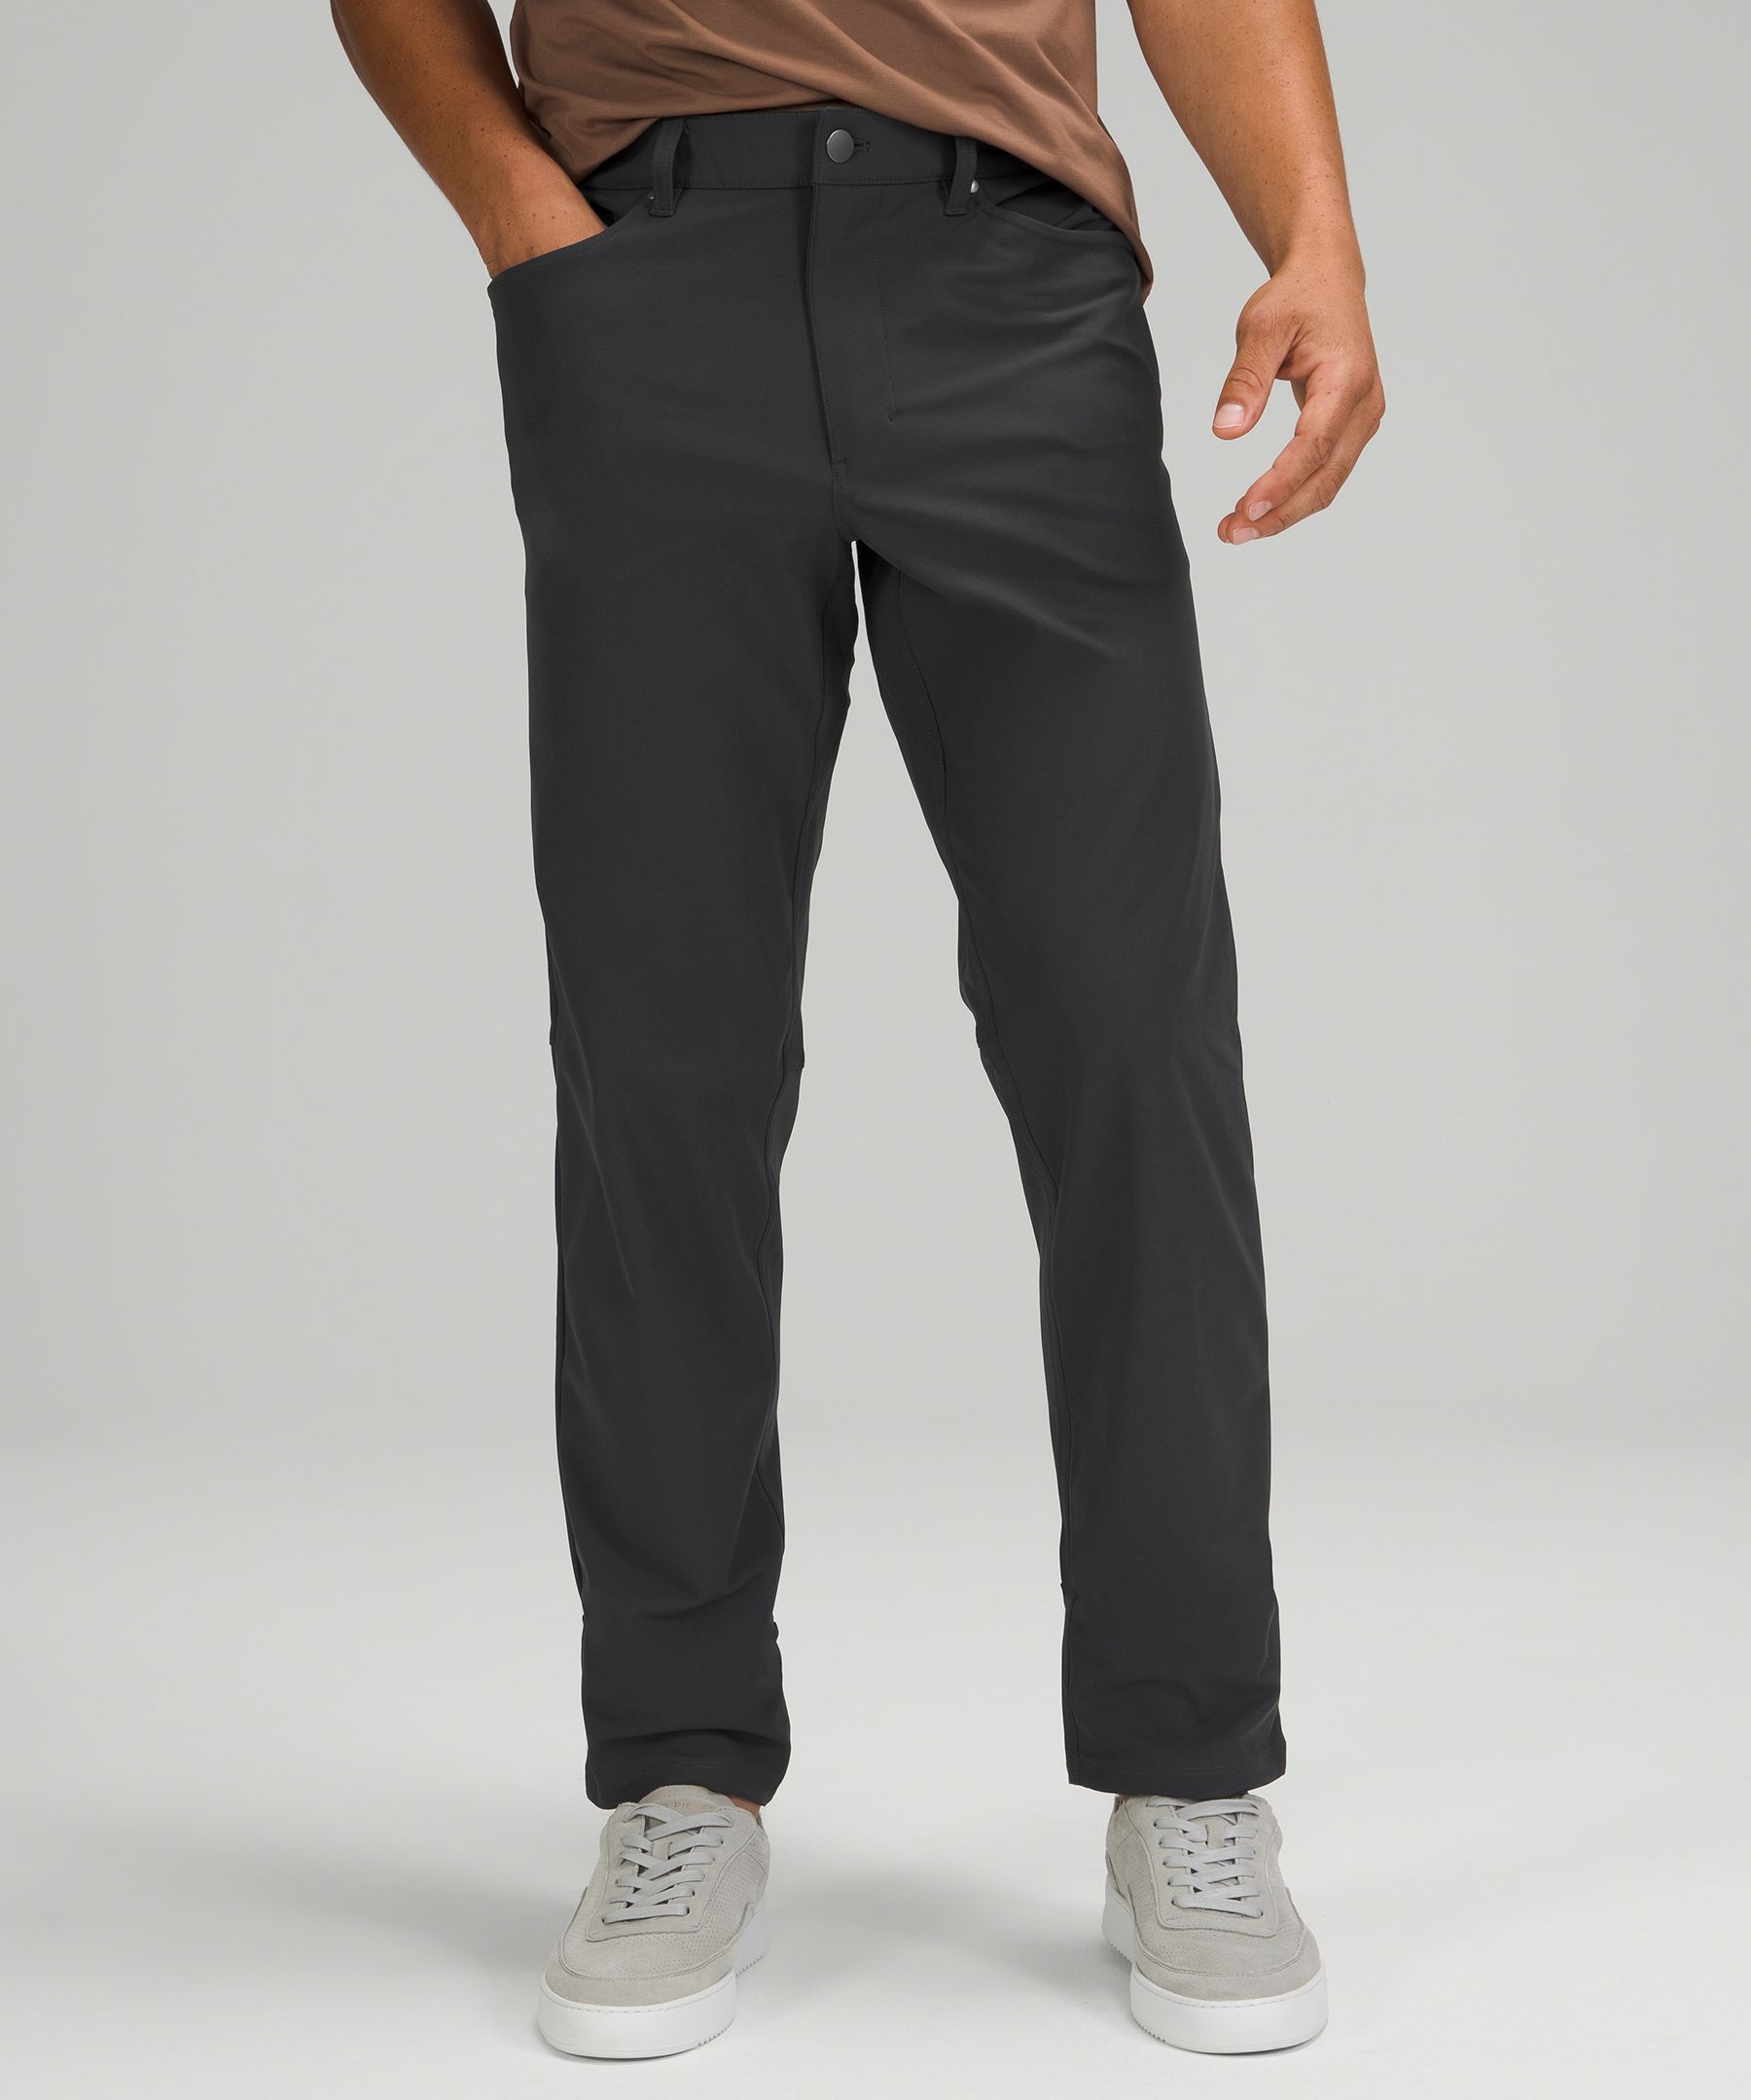 ABC Slim-Fit 5 Pocket Pant 37 *Warpstreme, Men's Trousers, lululemon